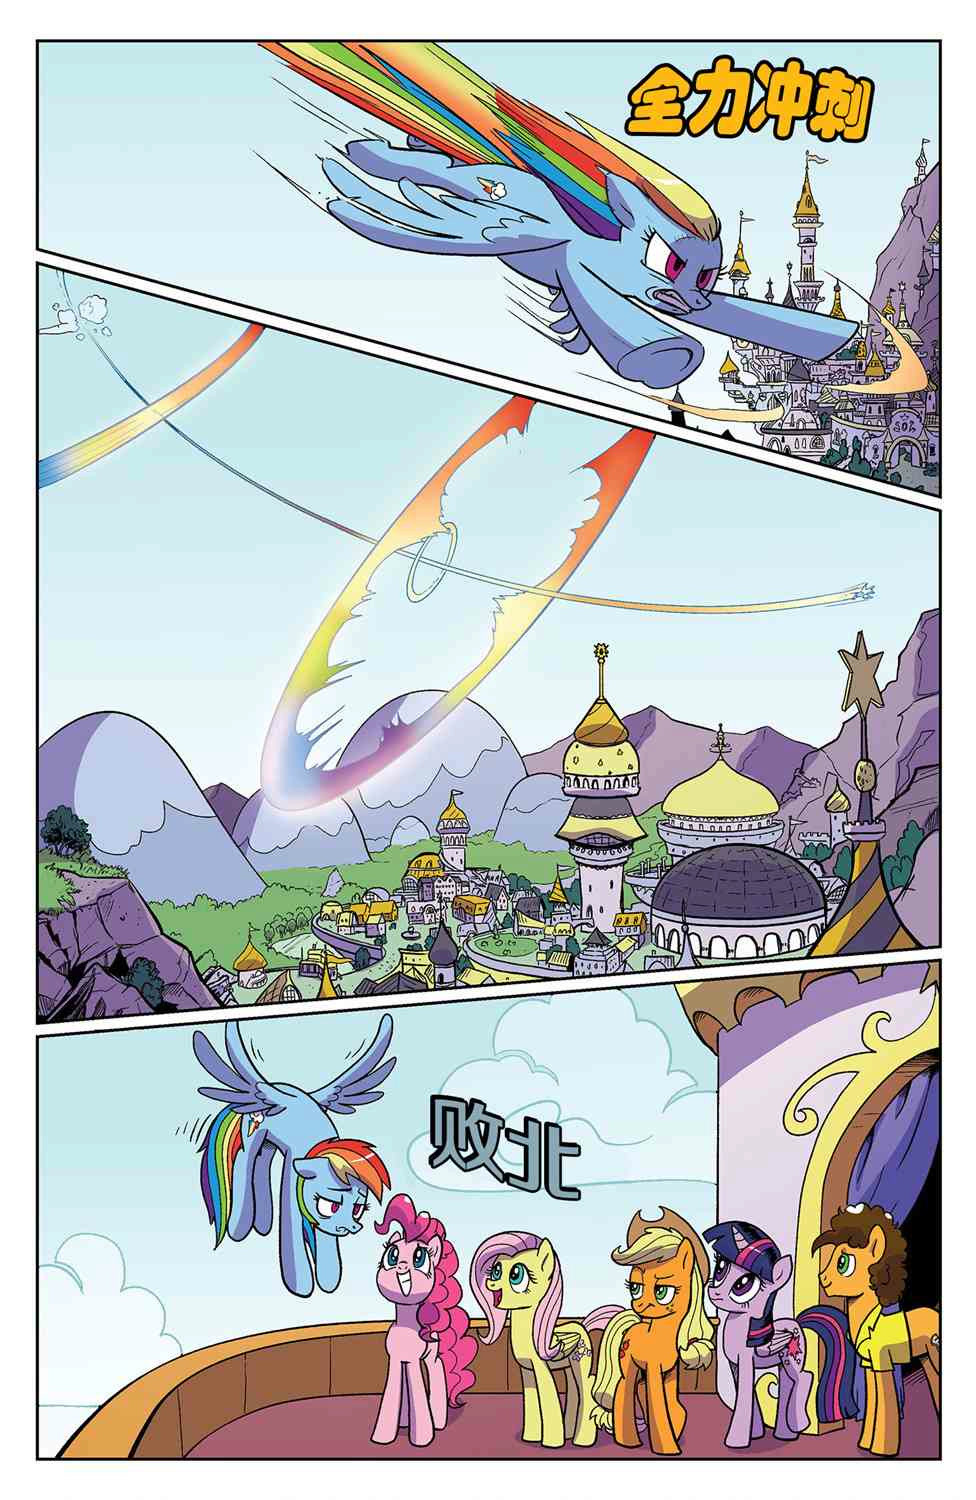 小马宝莉官方漫画友谊就是魔法：第九十五卷